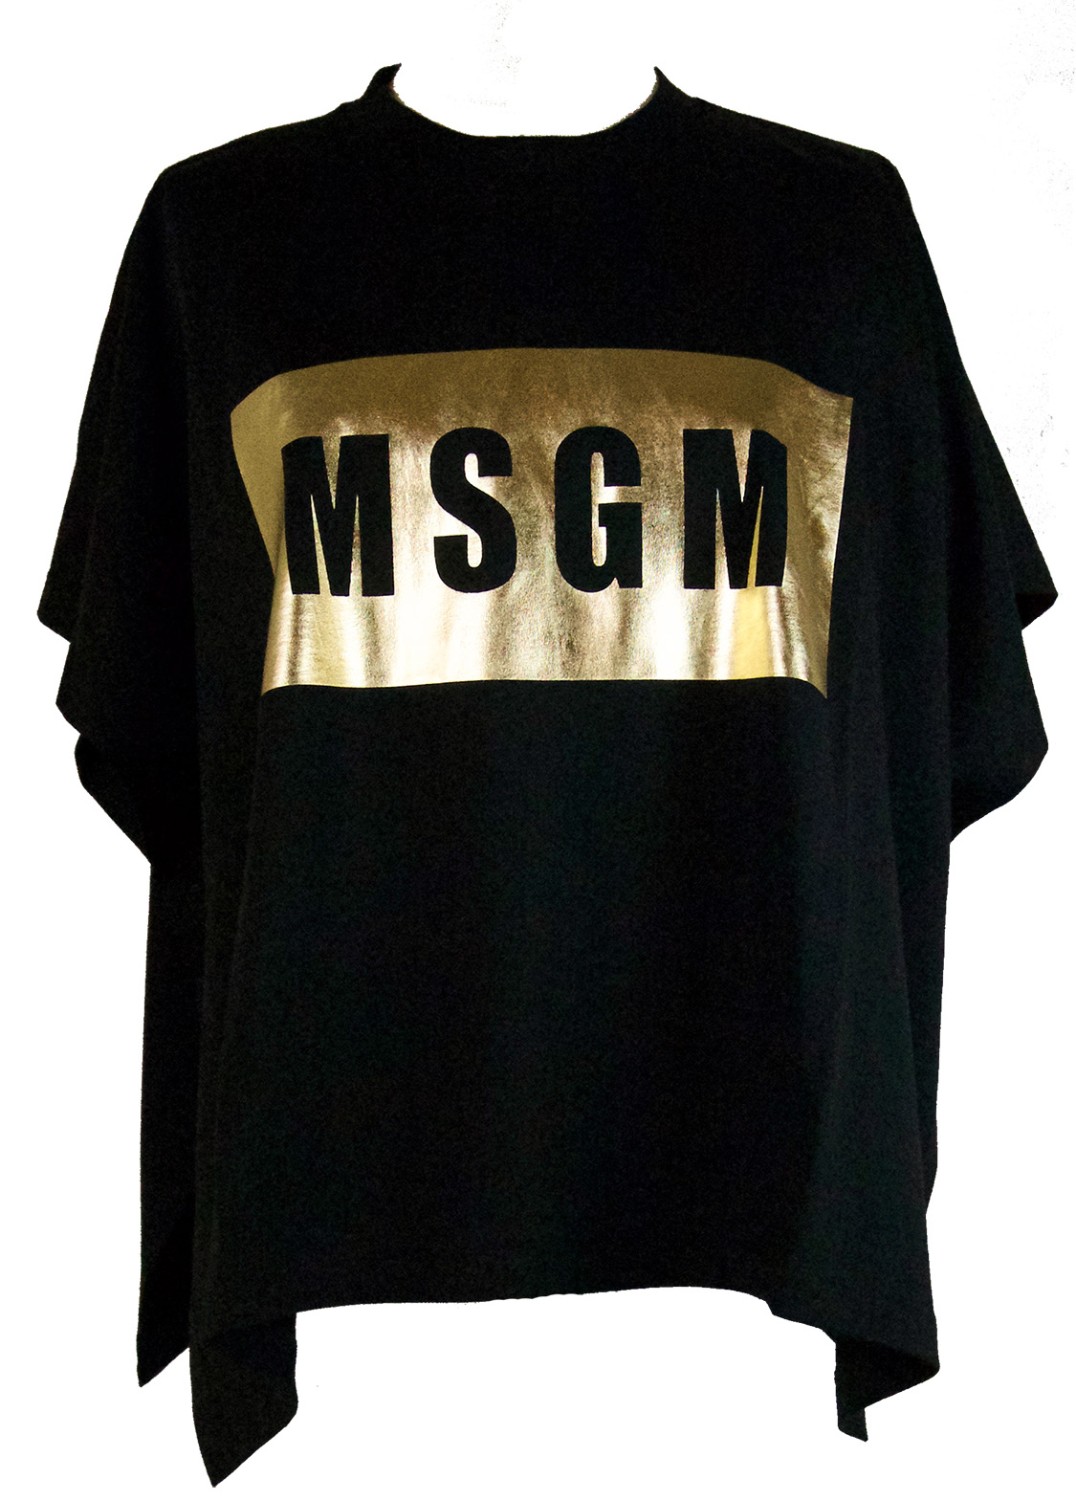 shop MSGM  T-shirts: T-shirt MSGM, nera, forma di rettangolo, spacchi laterali, logo oro a contrasto.

Composizione: 100% cotone. number 954